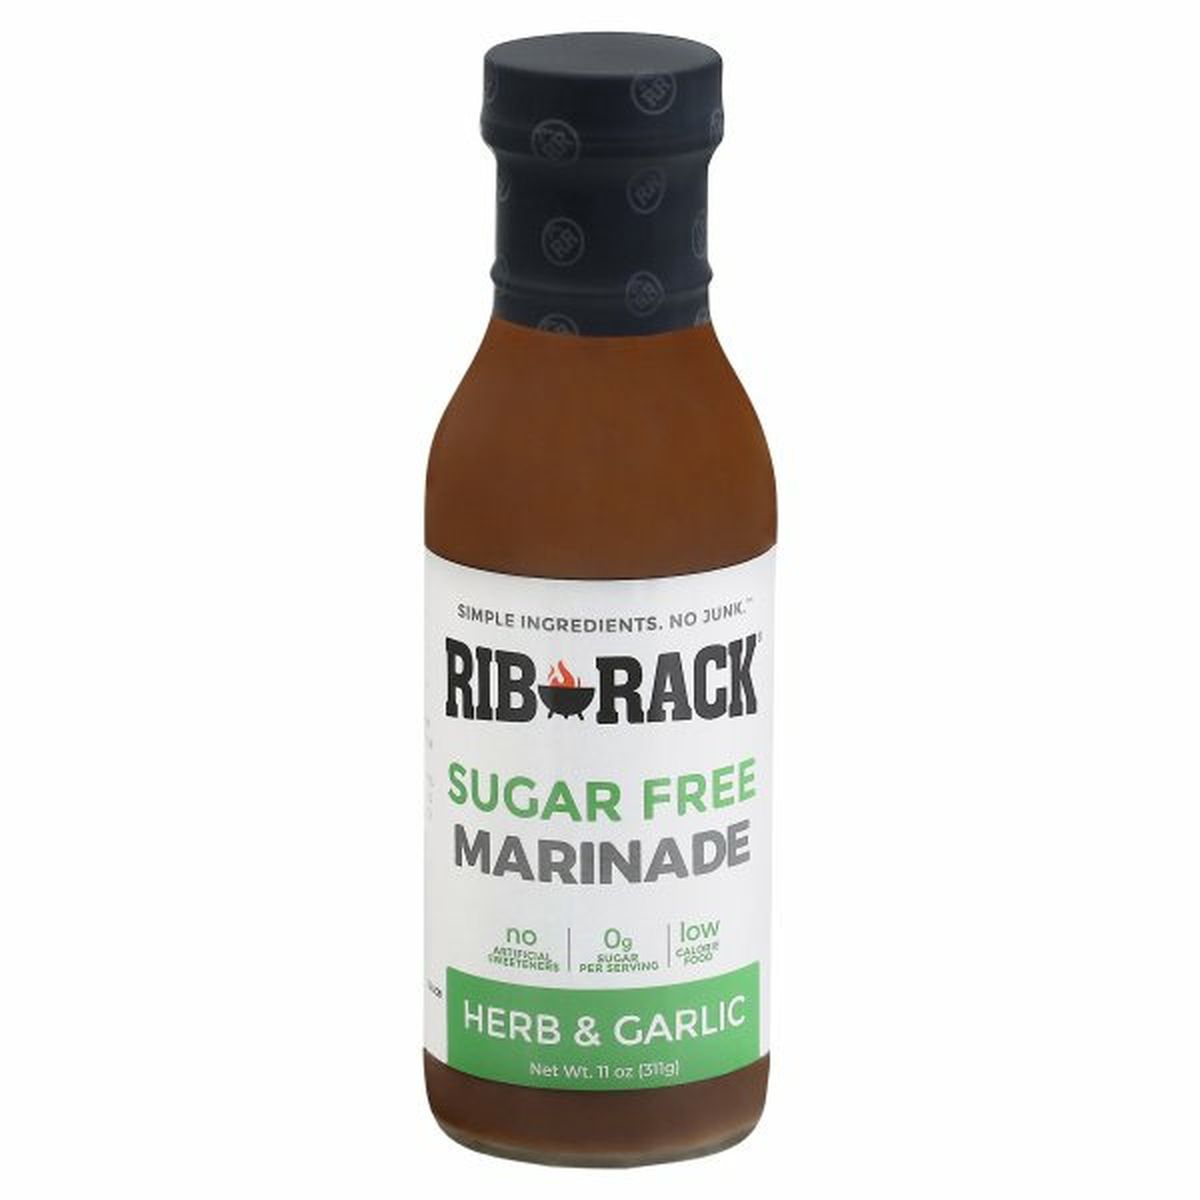 Calories in Rib Rack Marinade, Sugar Free